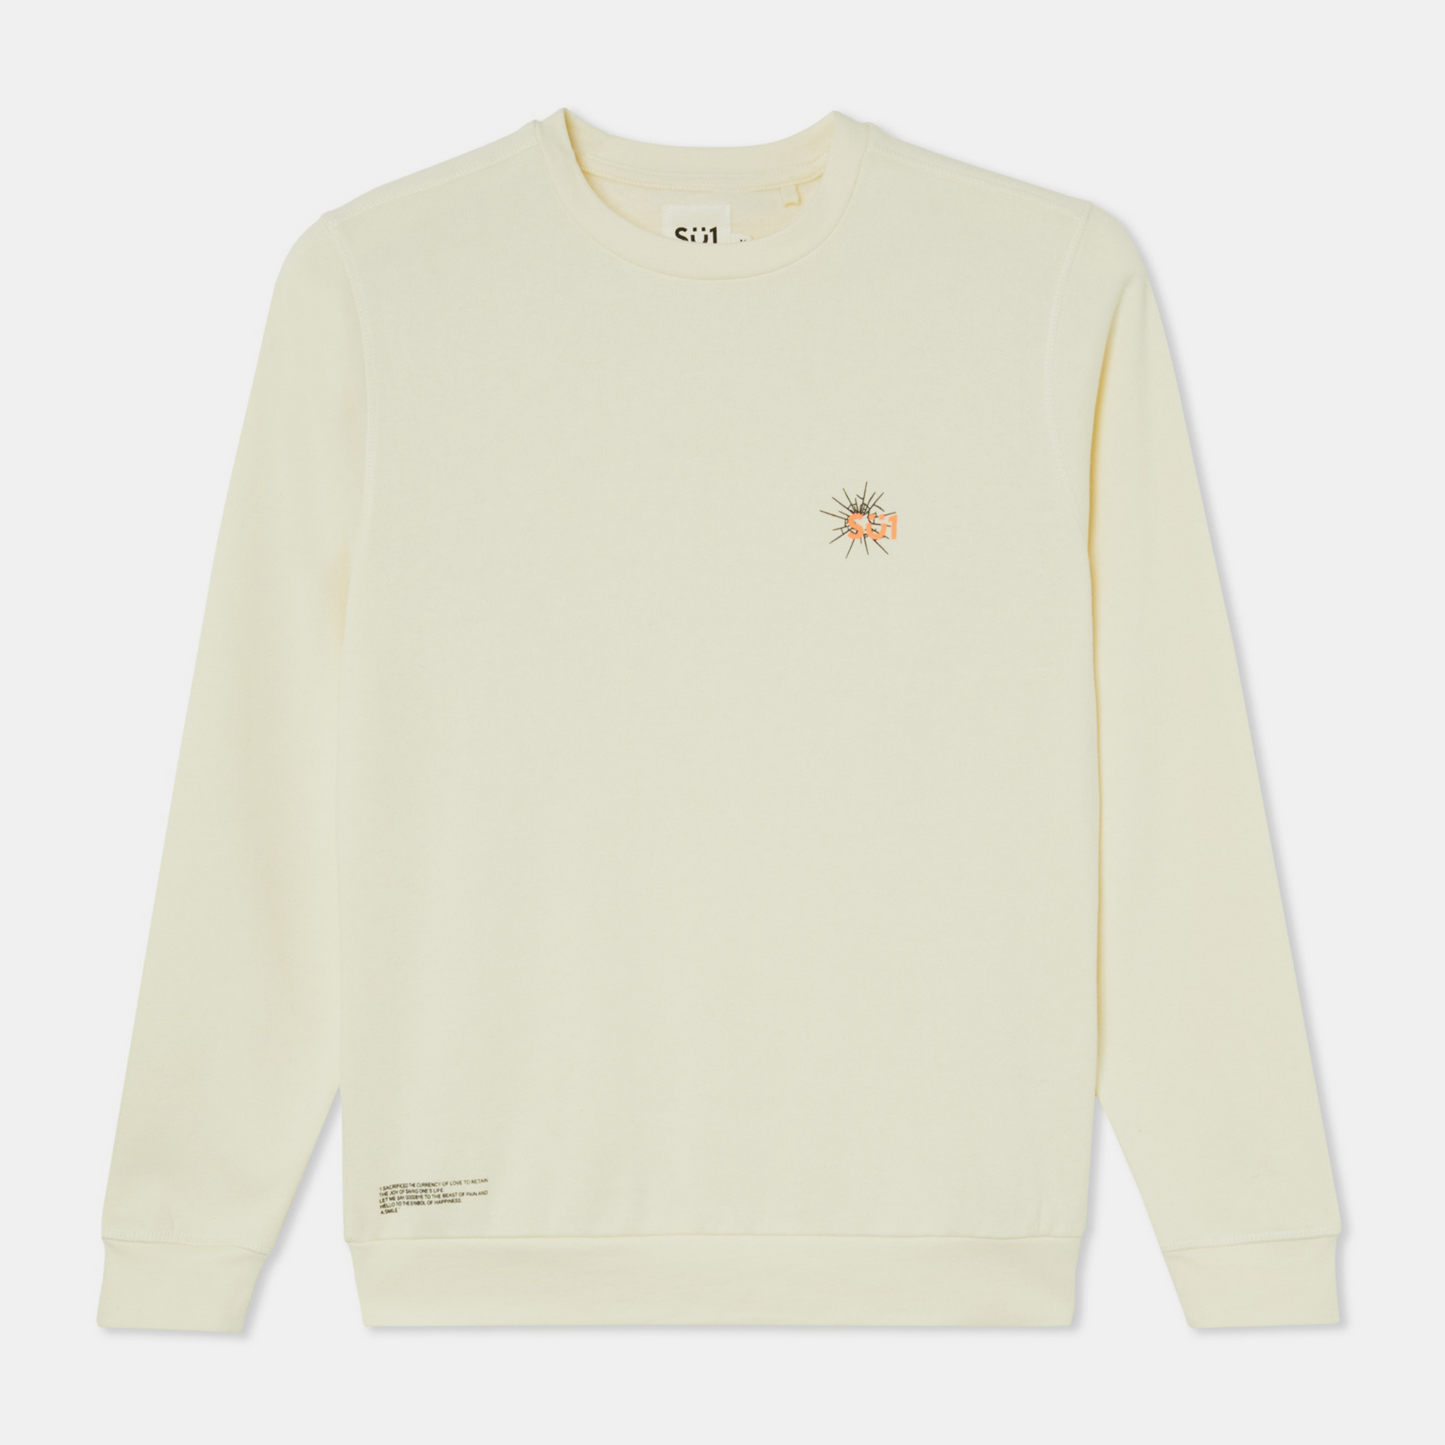 Sweatshirt Sweater Longsleeve Beige with logo front